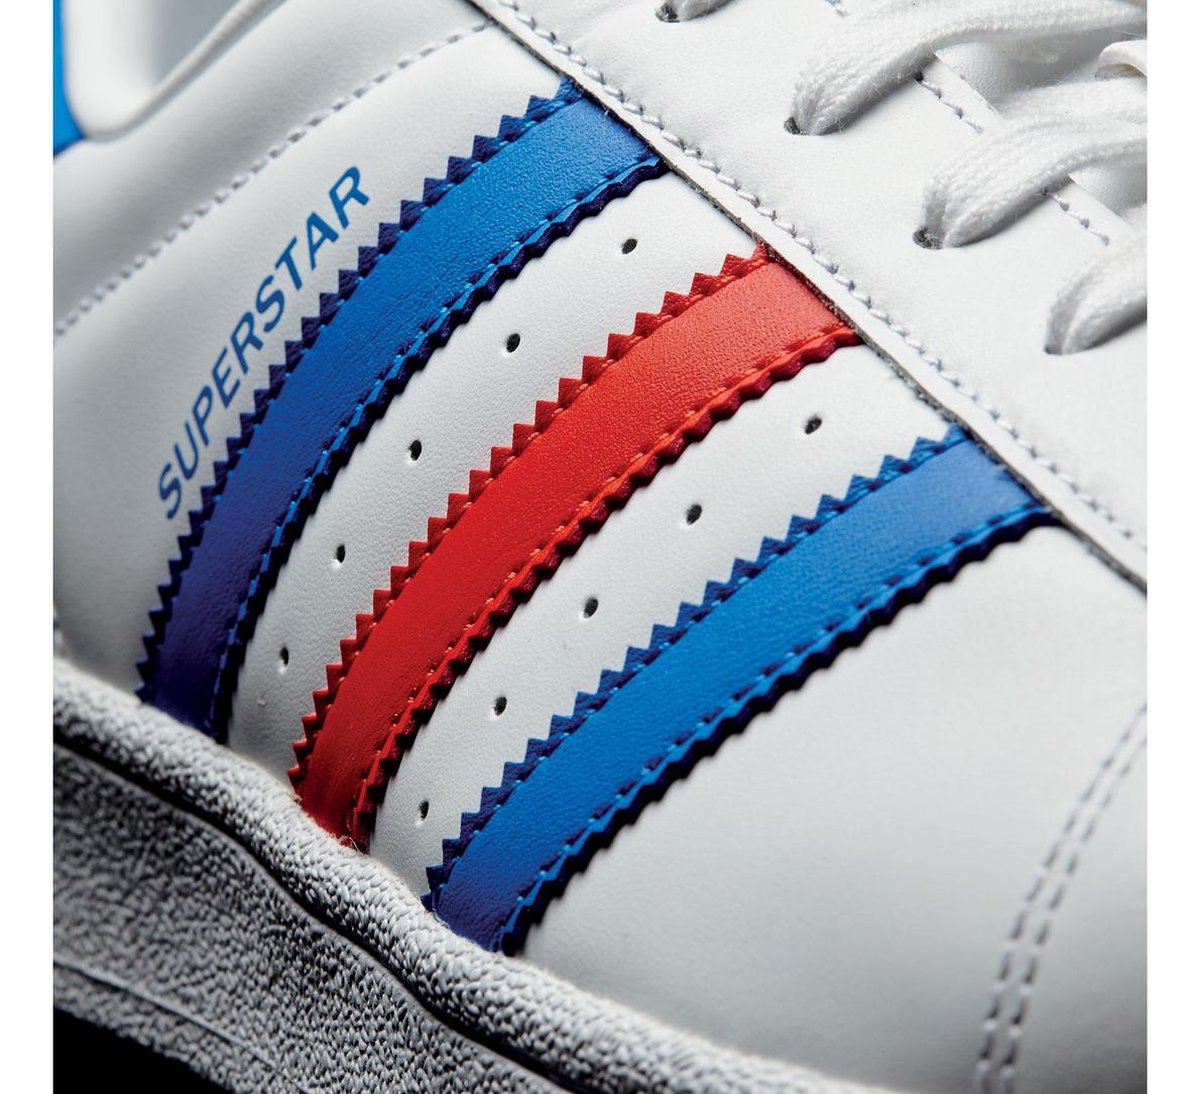 Picknicken interval Overleving adidas Superstar Sneakers Heren Sneakers - Maat 42 2/3 - Mannen - wit/blauw/ rood | bol.com